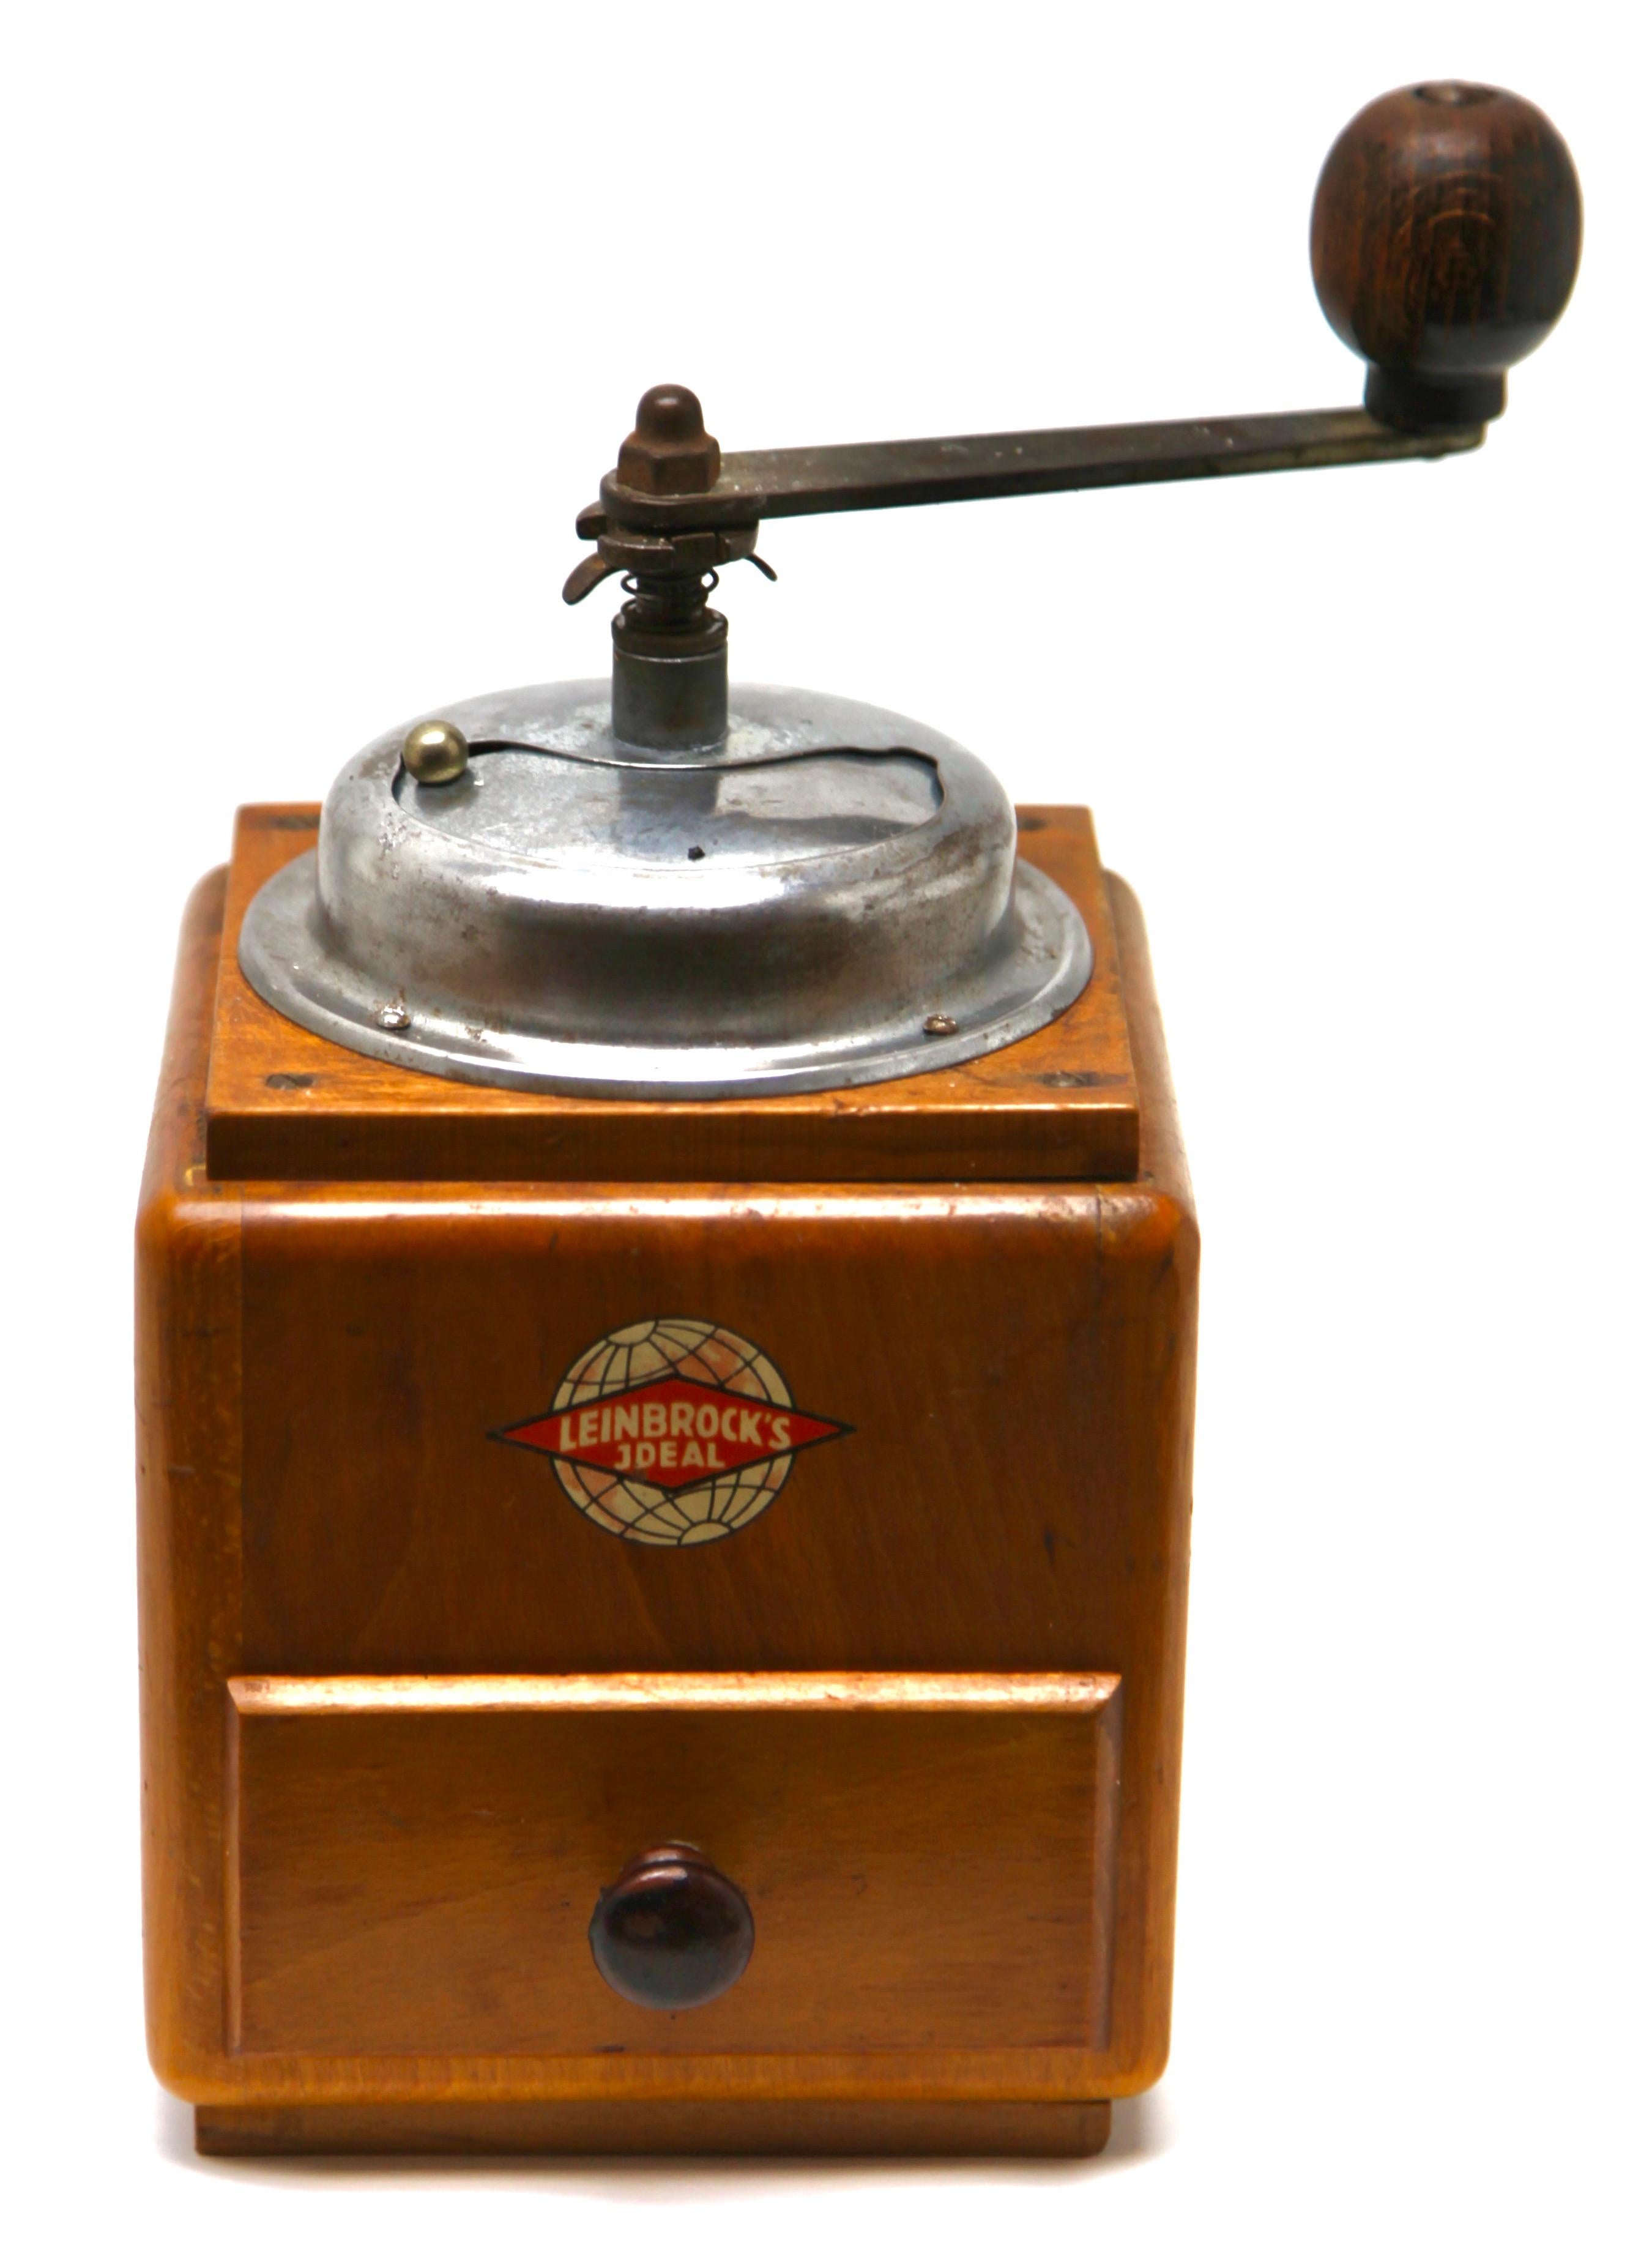 leinbrock coffee grinder